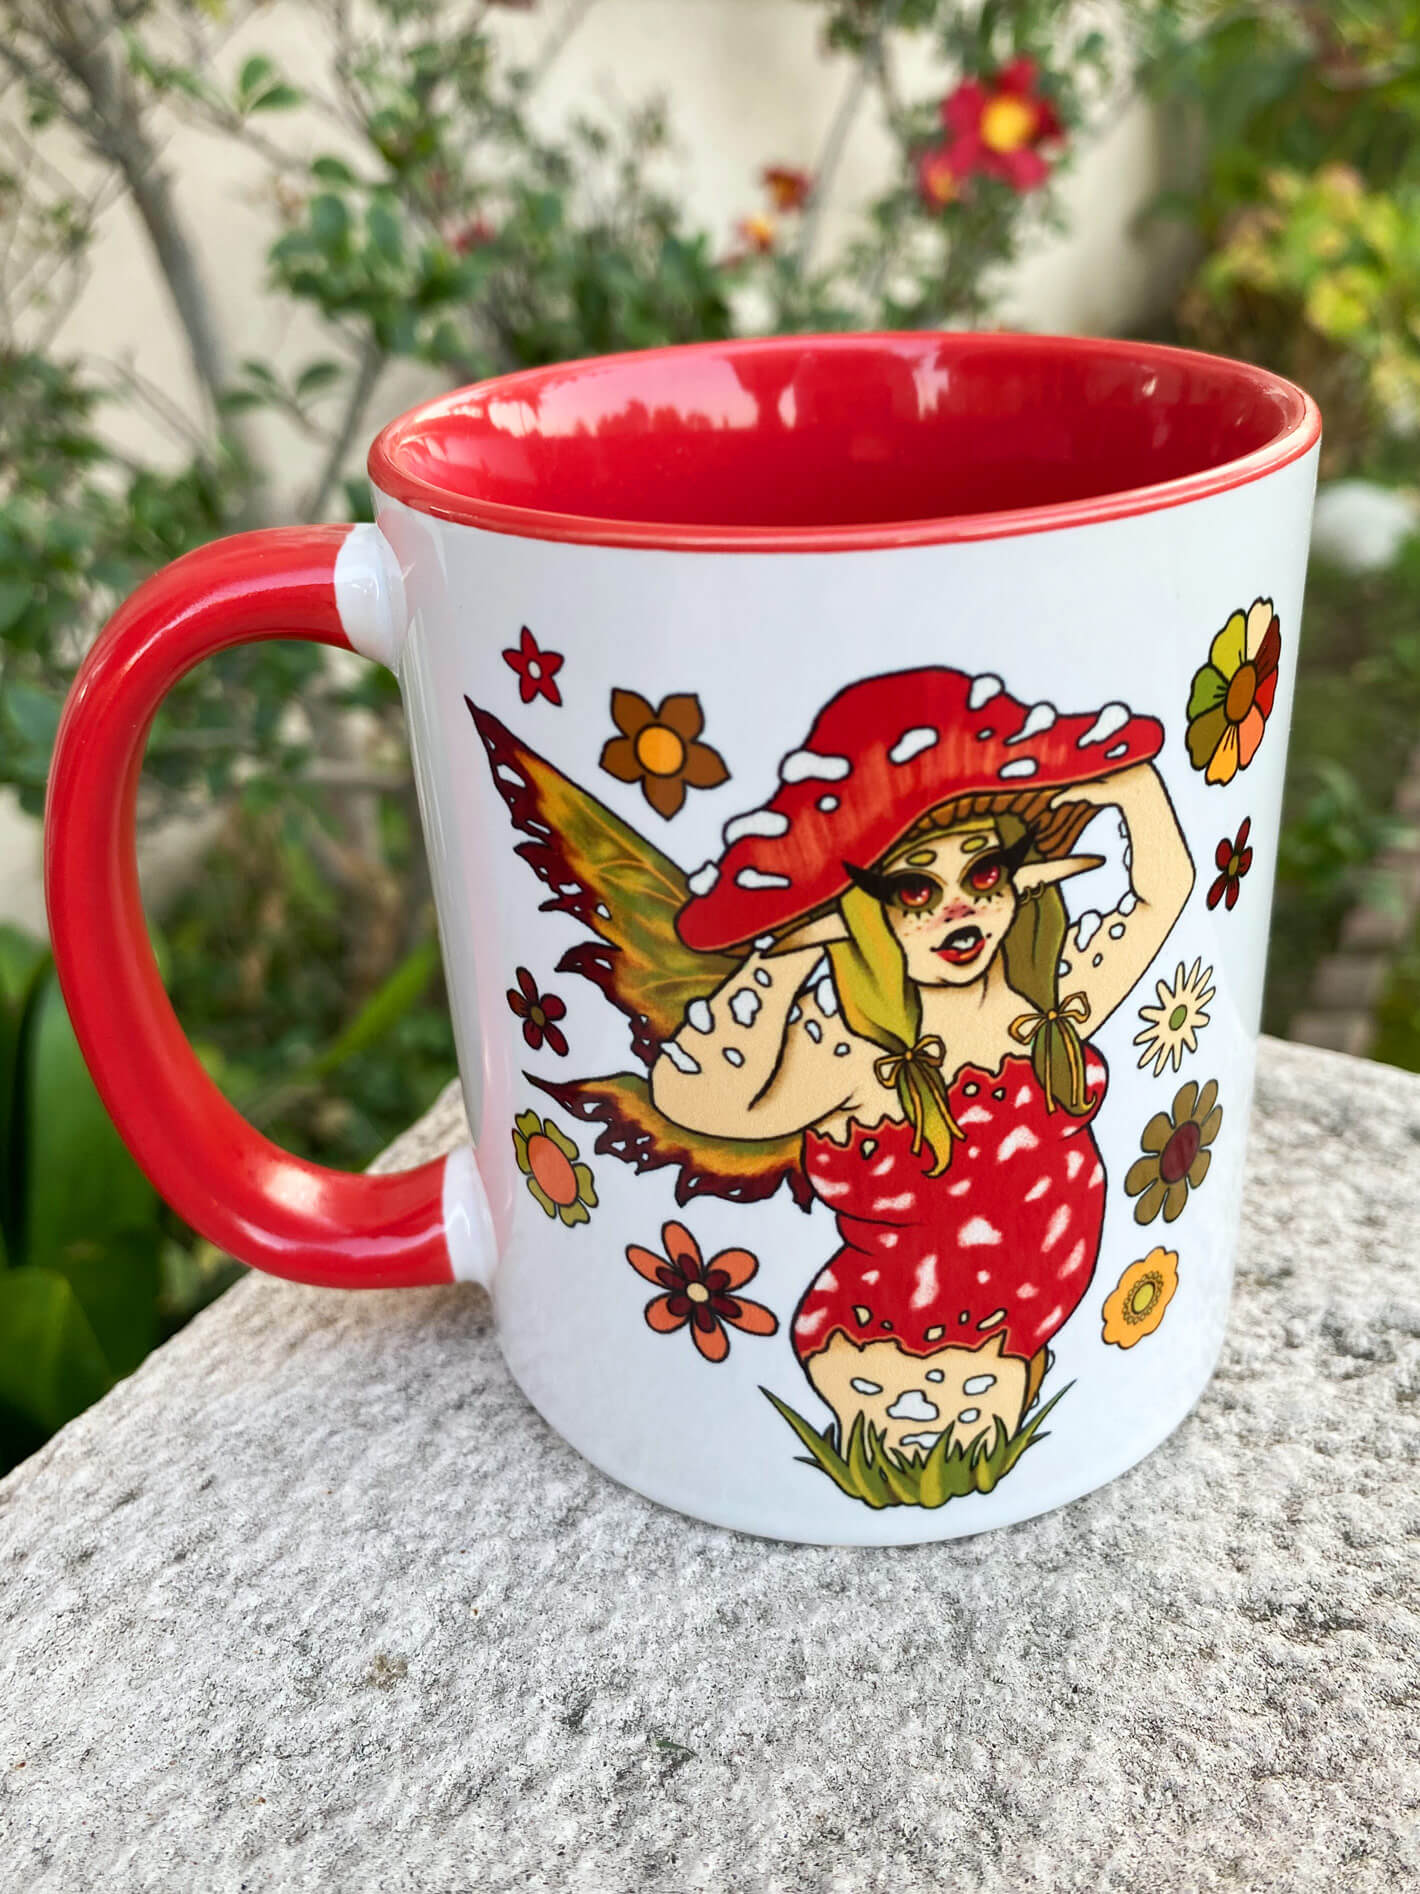 Fairycore mushroom mug.